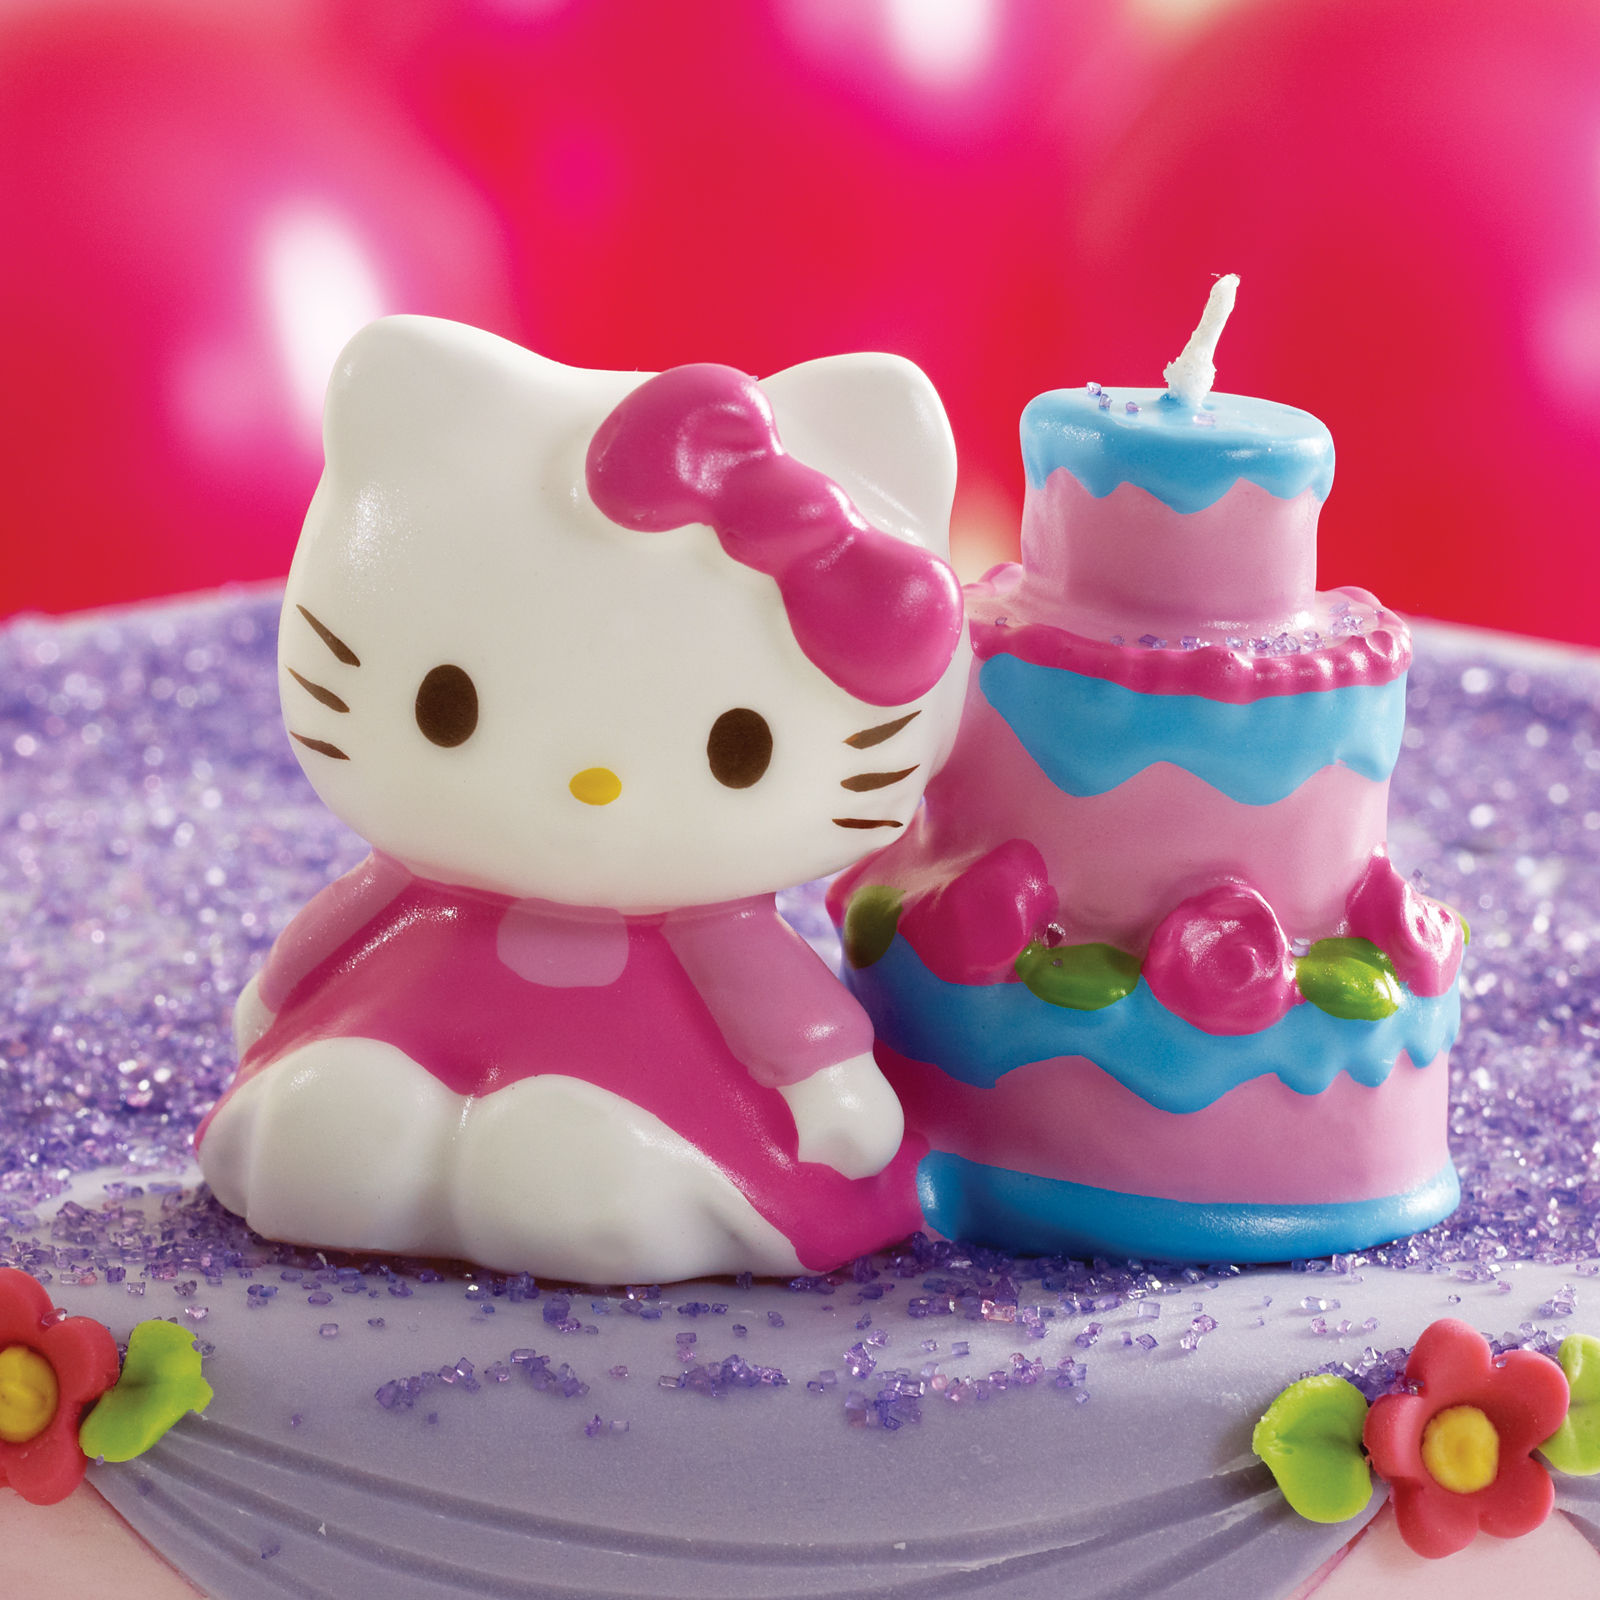 Китти из пластилина. Хеллоу Китти. Китти торт hello Kitty. Муссовый торт hello Kitty. Торт Хелло Китти Happy Birthday.